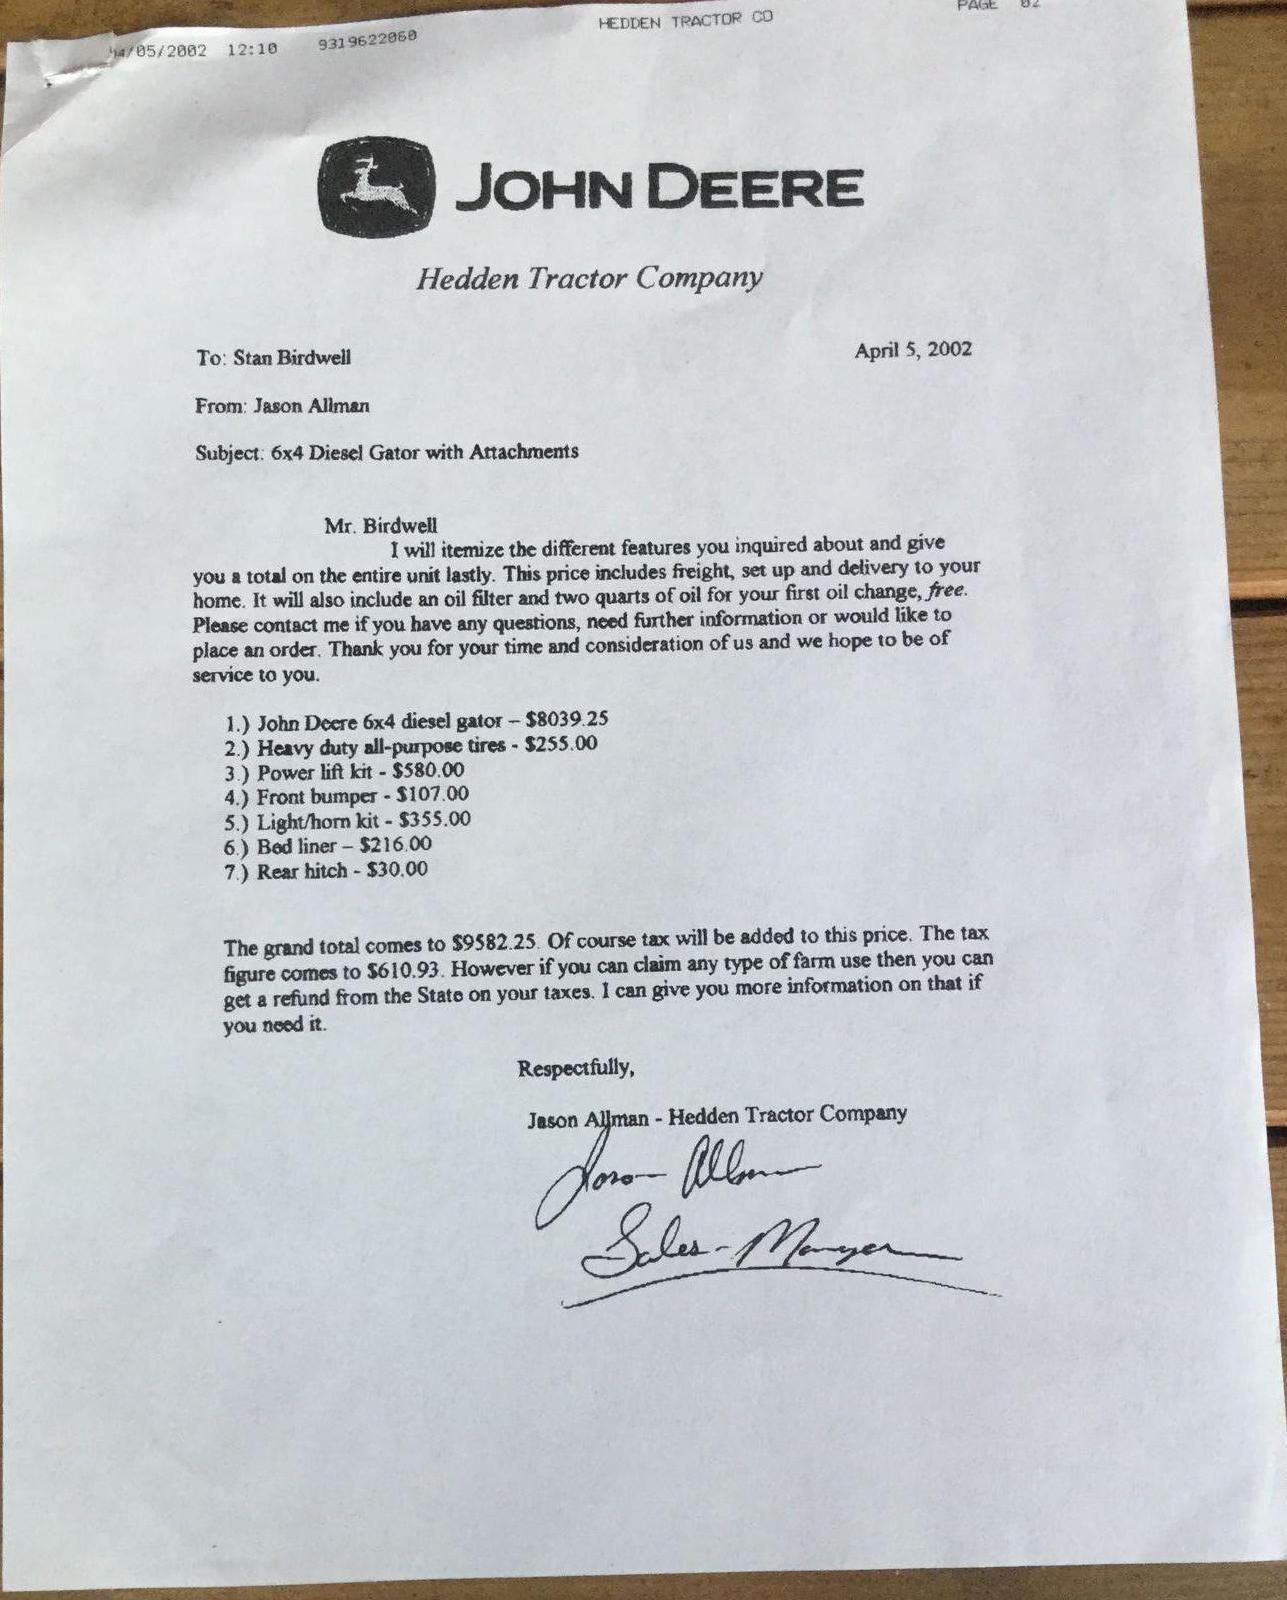 John Deere Trail Gator Diesel